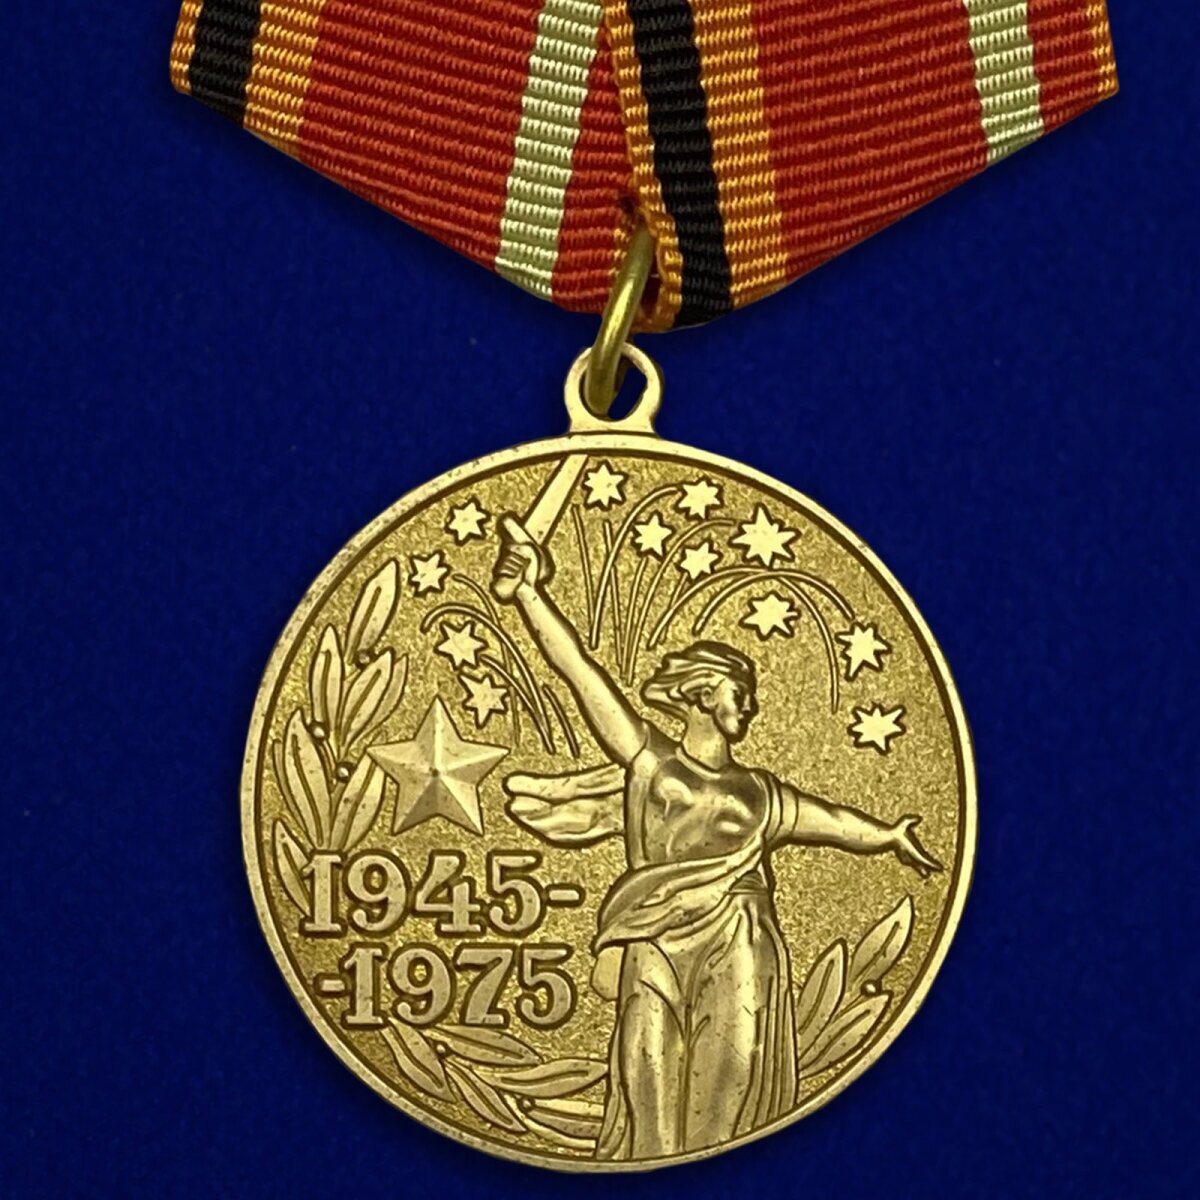 Юбилейная медаль «30 лет Победы в Великой Отечественной войне» (Муляж)